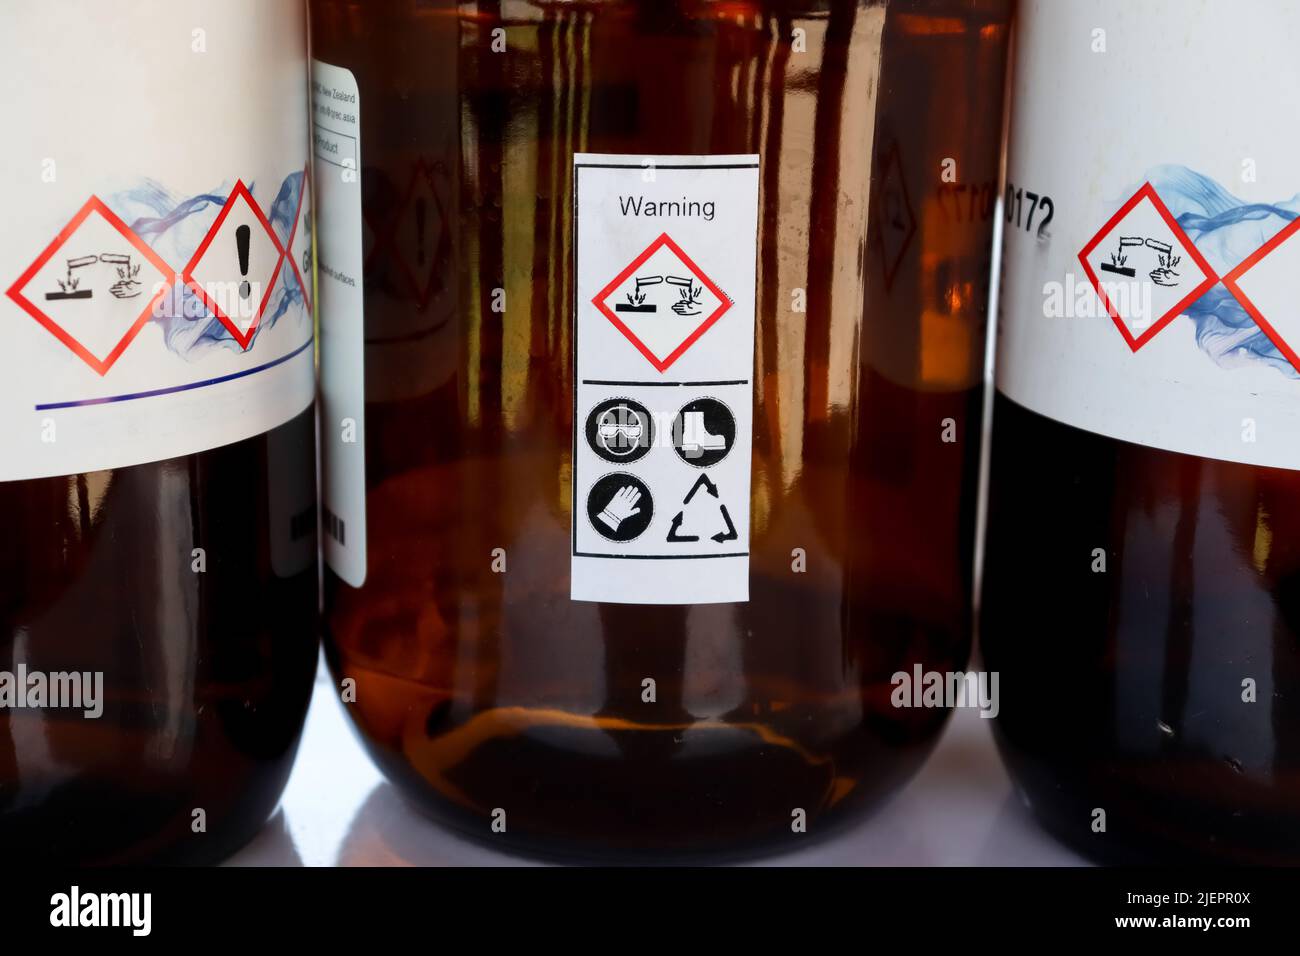 Sicherheitssymbol für die Verwendung von Chemikalien, Etikett auf der Chemikalienflasche Stockfoto